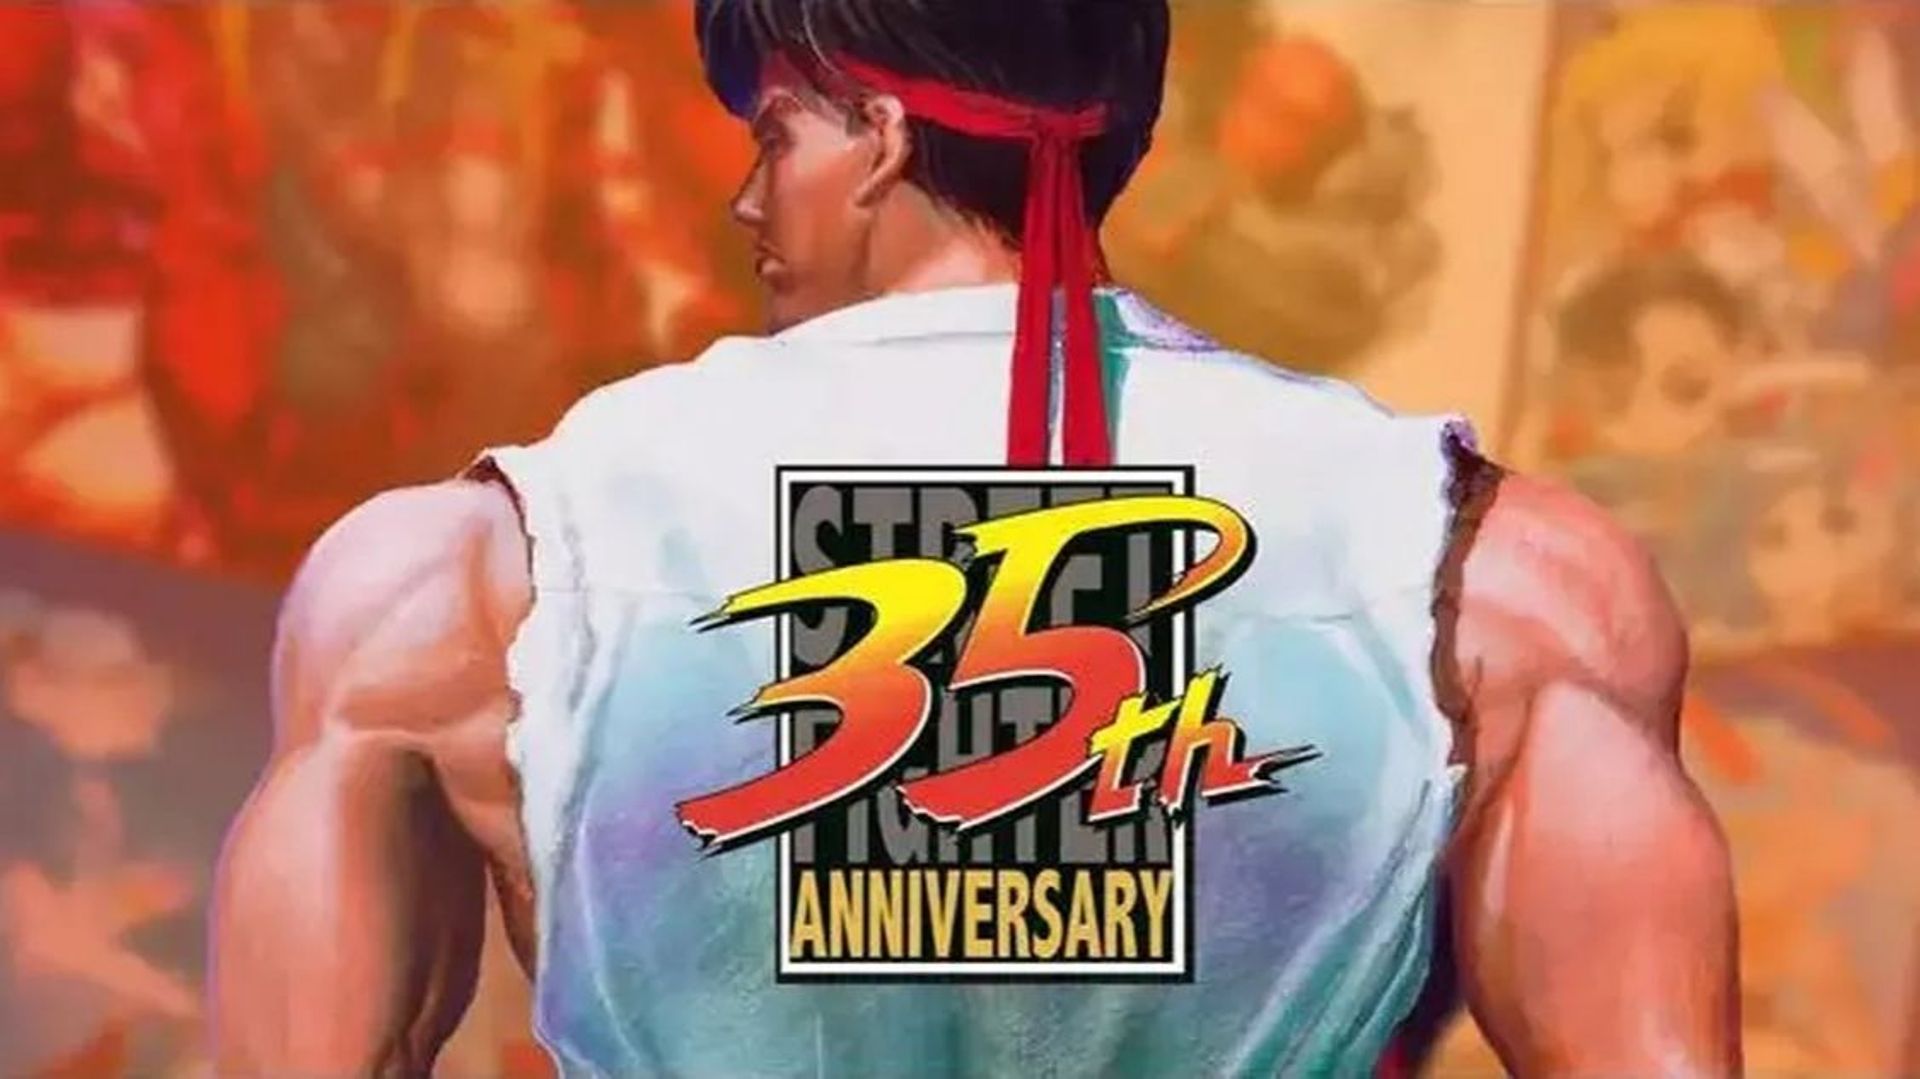 La franchise de versus fighting "Street Fighter" fête ses 35 ans et publie un site web dédié à l’occasion.